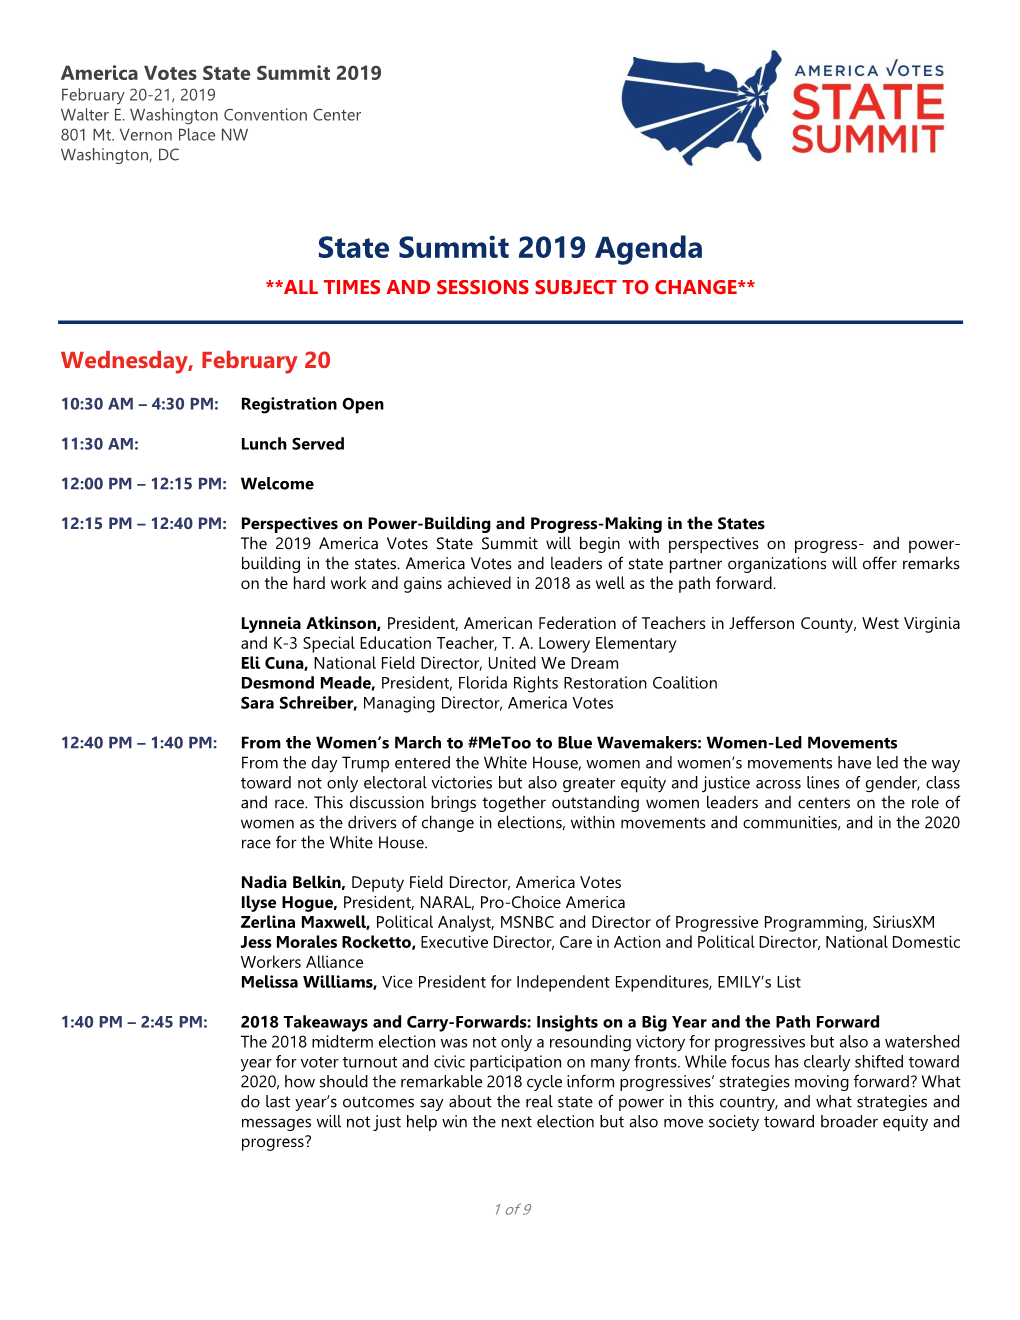 State Summit 2019 Agenda